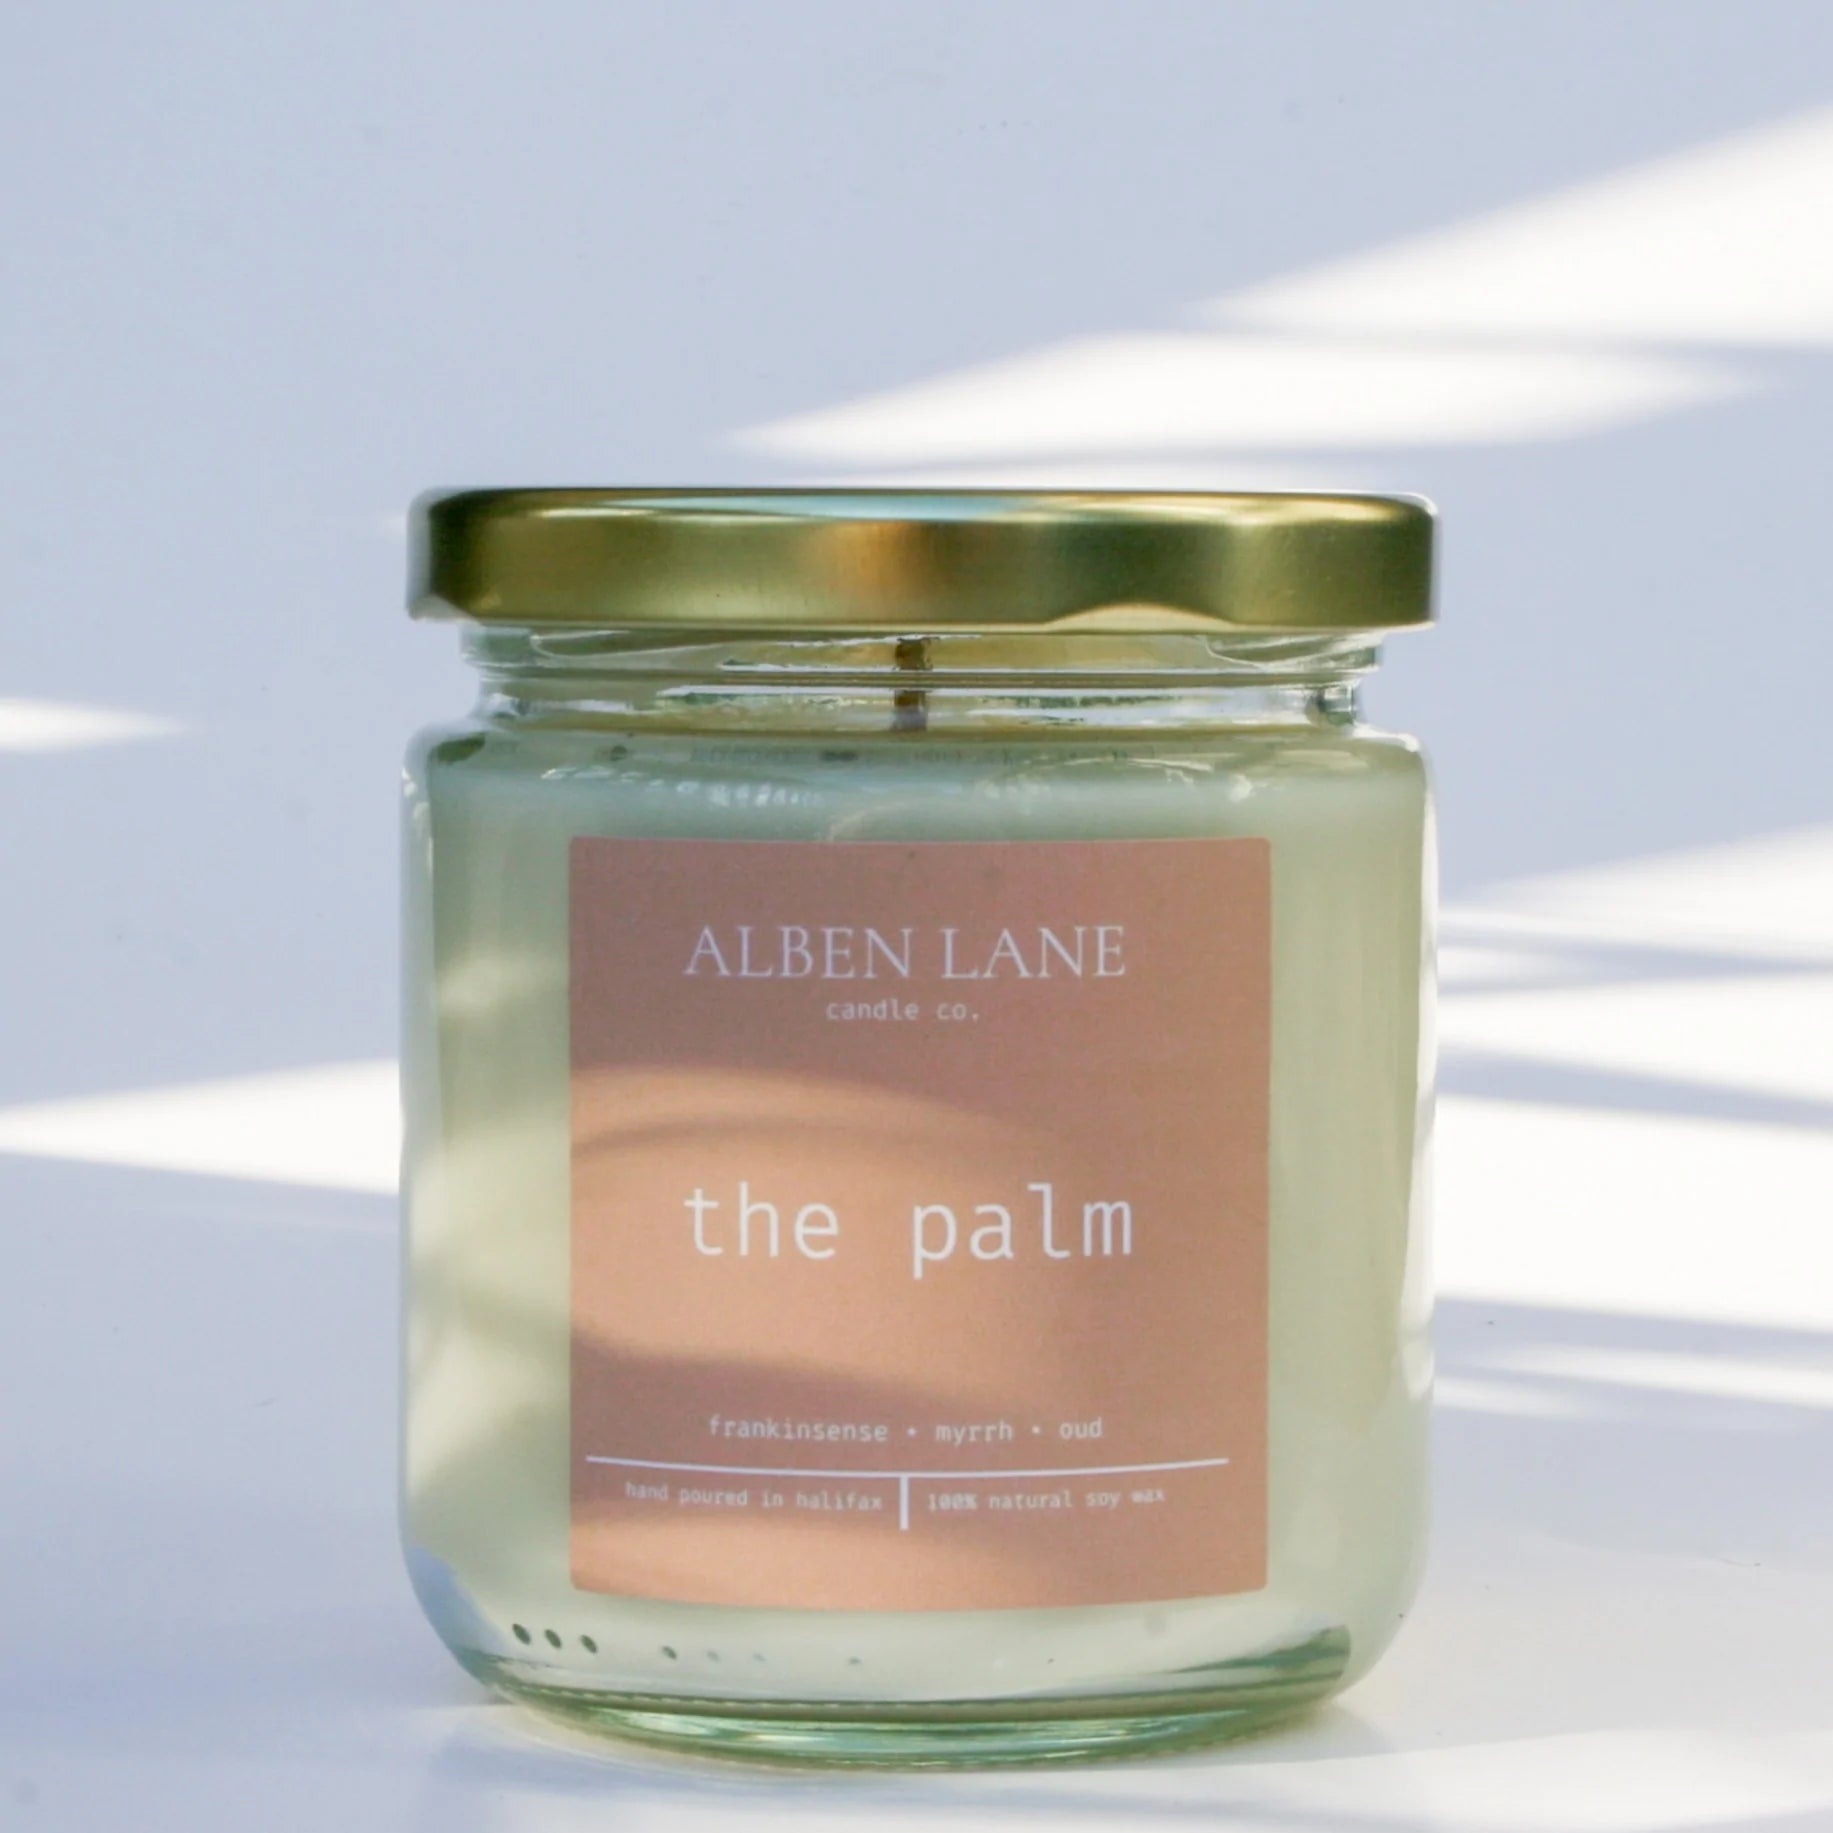 The Palm - Alben Lane